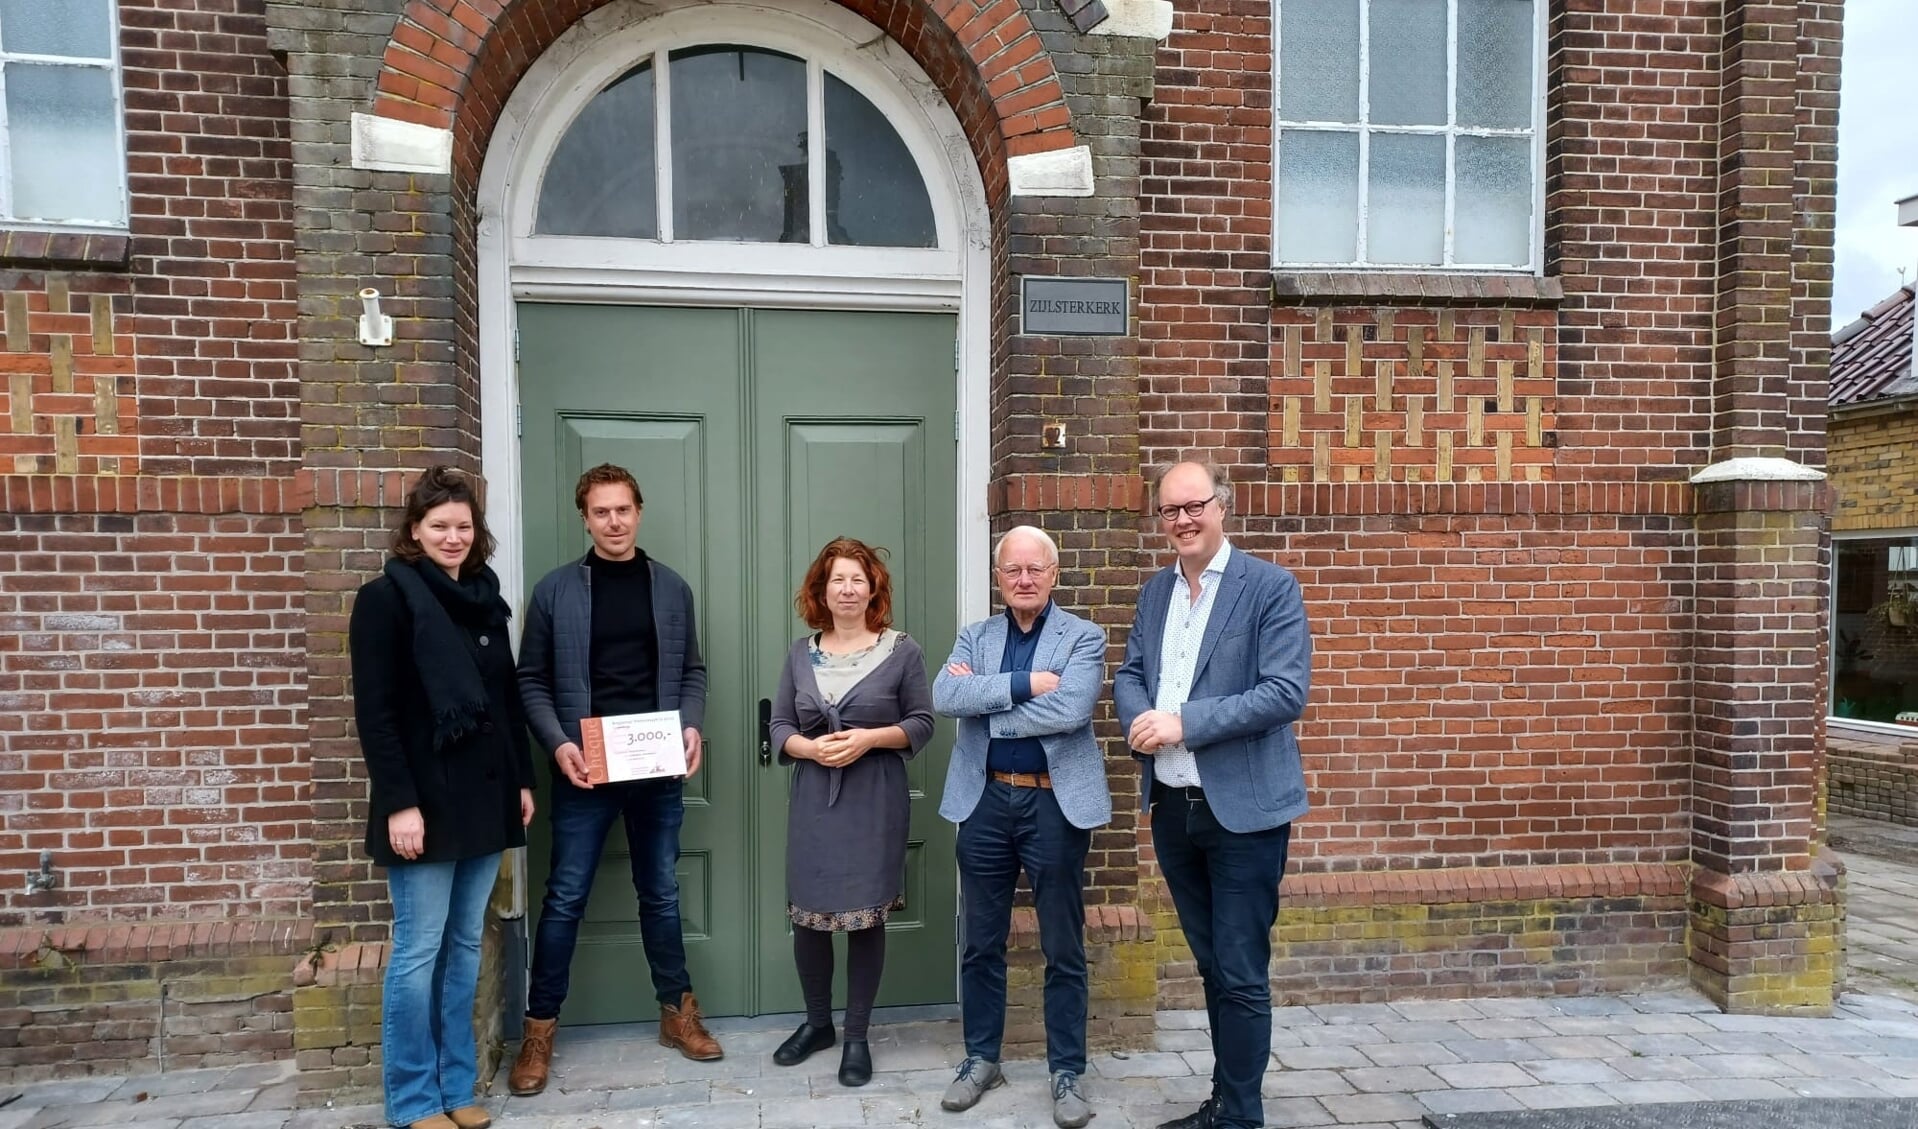 V.l.n.r.: de winnaars van de prijs, Marleen Slim en Frank Brouwers; Jacqueline Brauwers en Oebele Vries van Erfgoed Kollumerland en architect Silvester Adema.